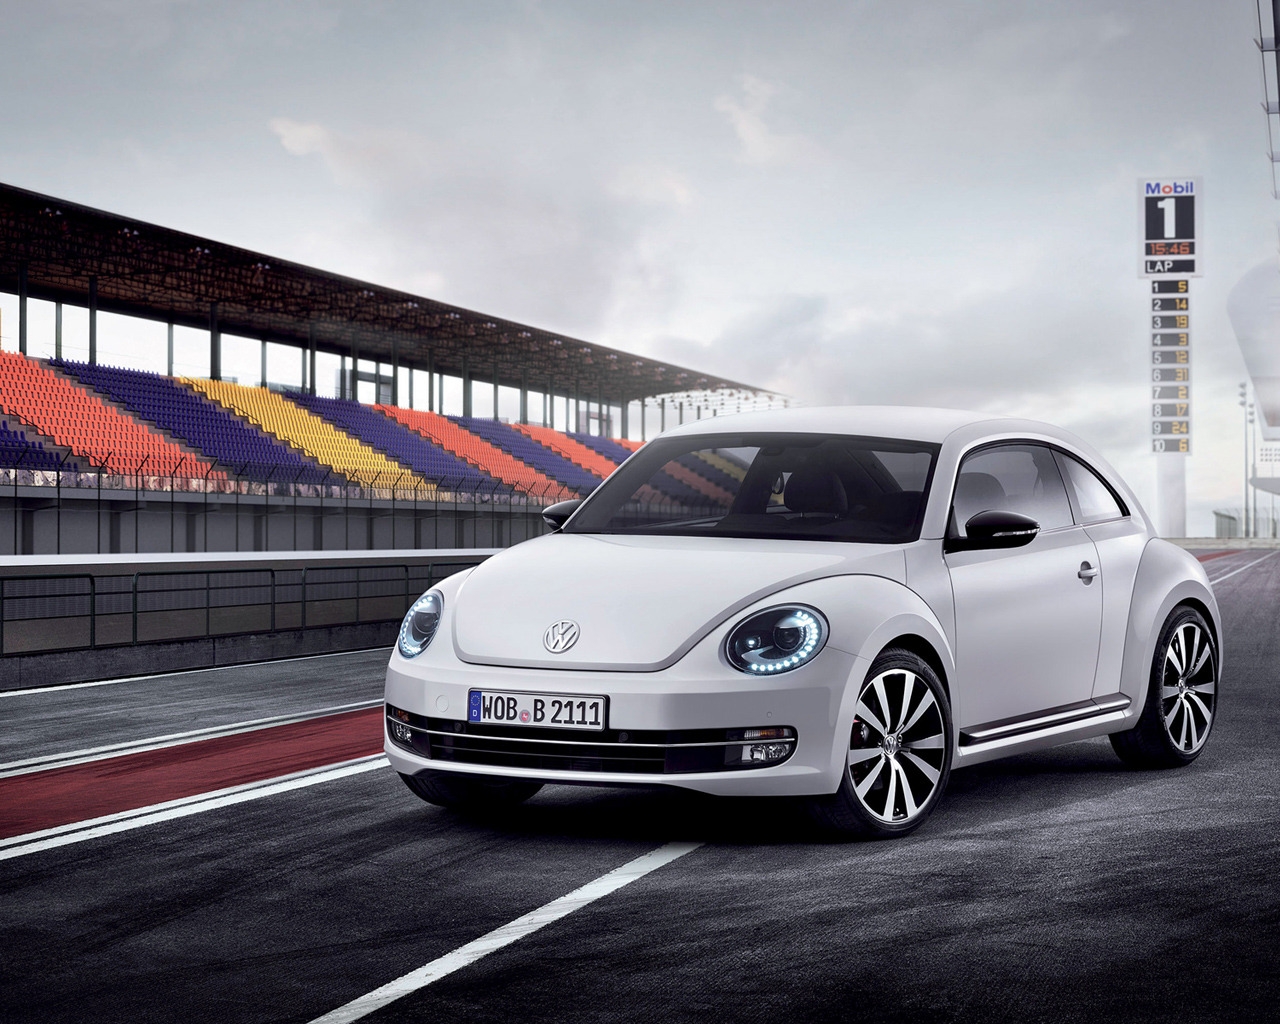 Volkswagen Beetle 2012 for 1280 x 1024 resolution